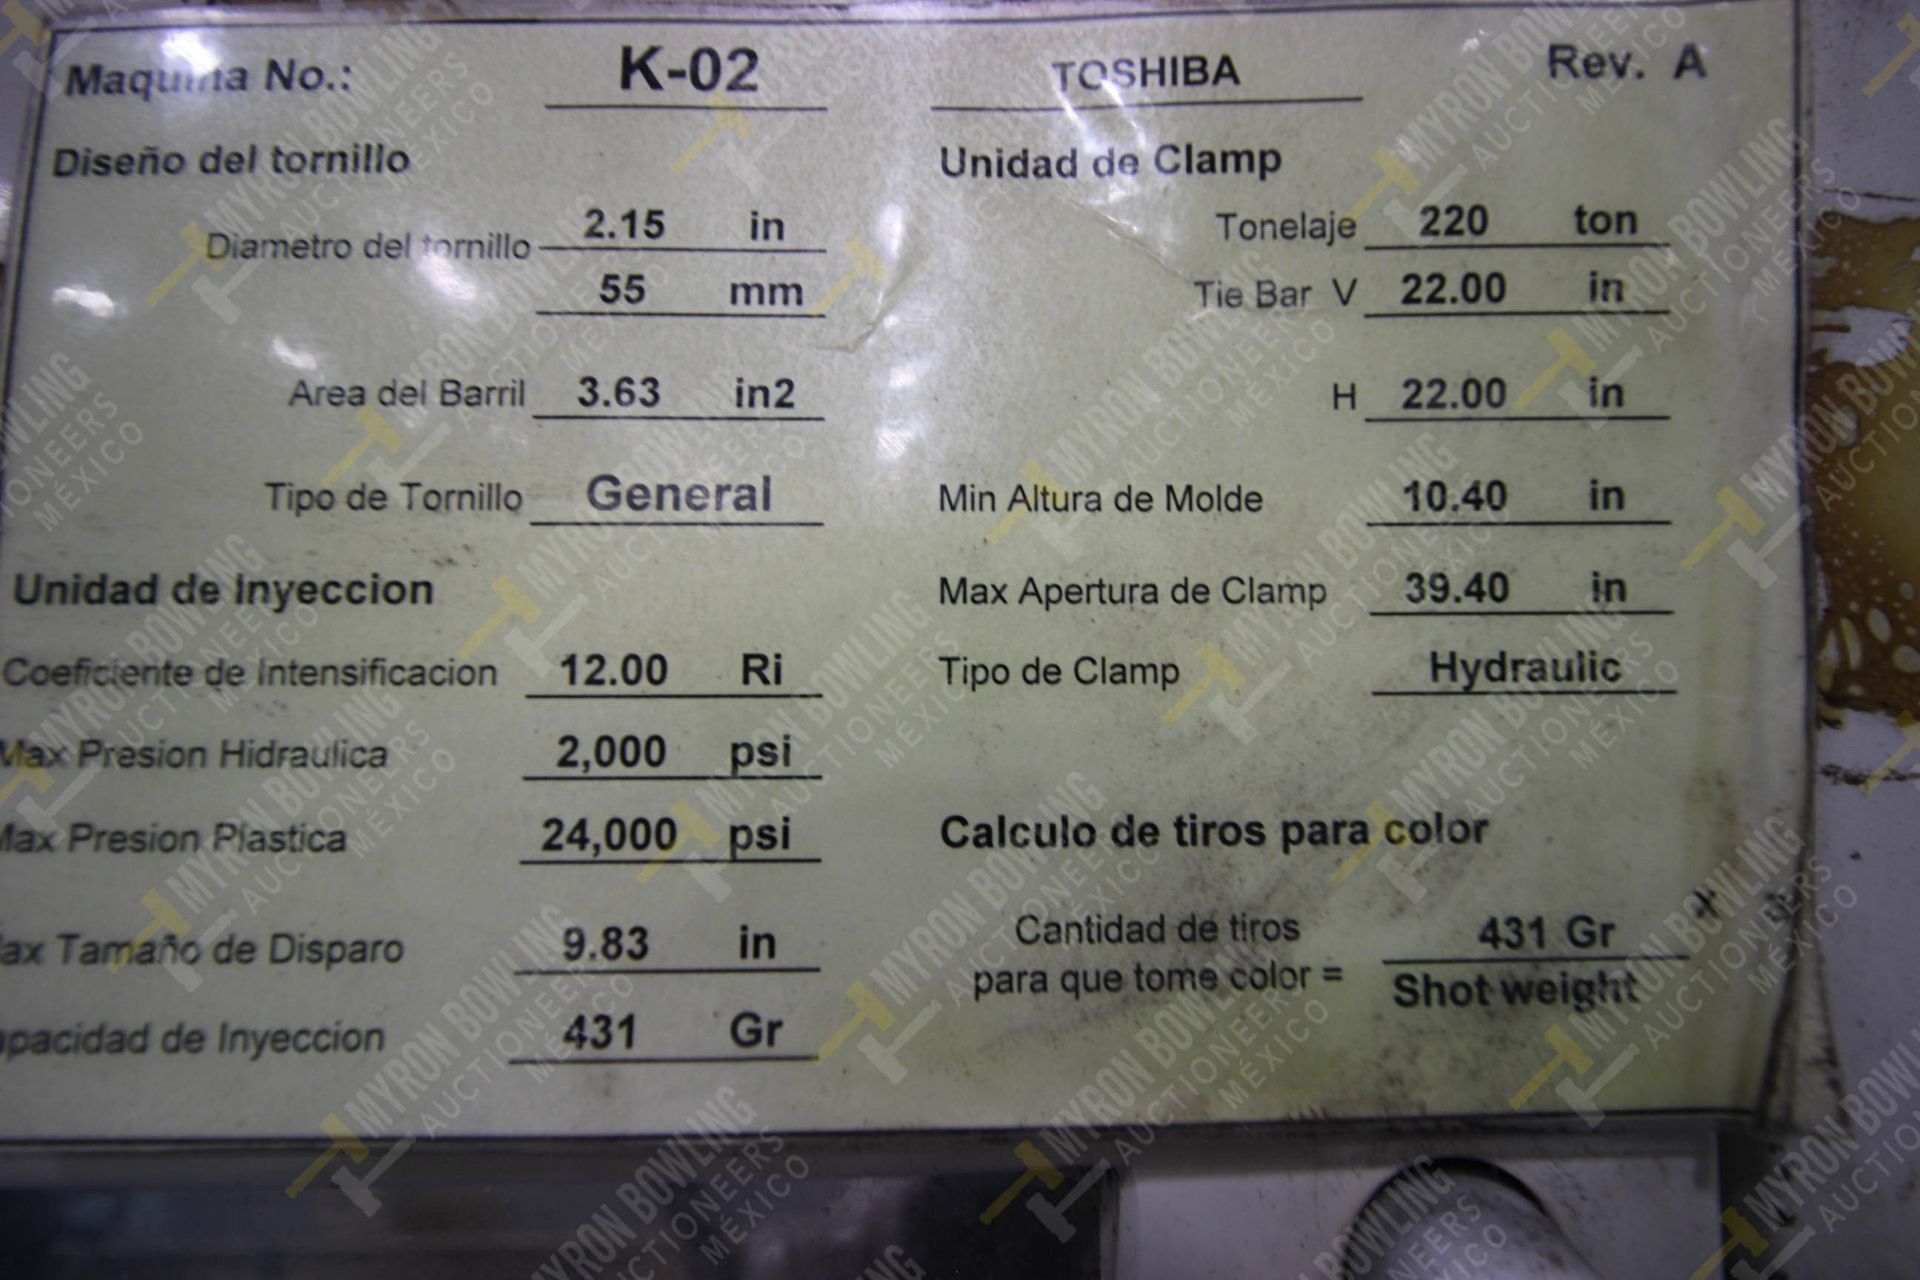 INYECTORA DE PLASTICO, MARCA TOSHIBA IS220G, NO. SERIE 503903, NO. ACTIVO K02, AÑO 1995, MODELO IS2 - Image 17 of 18